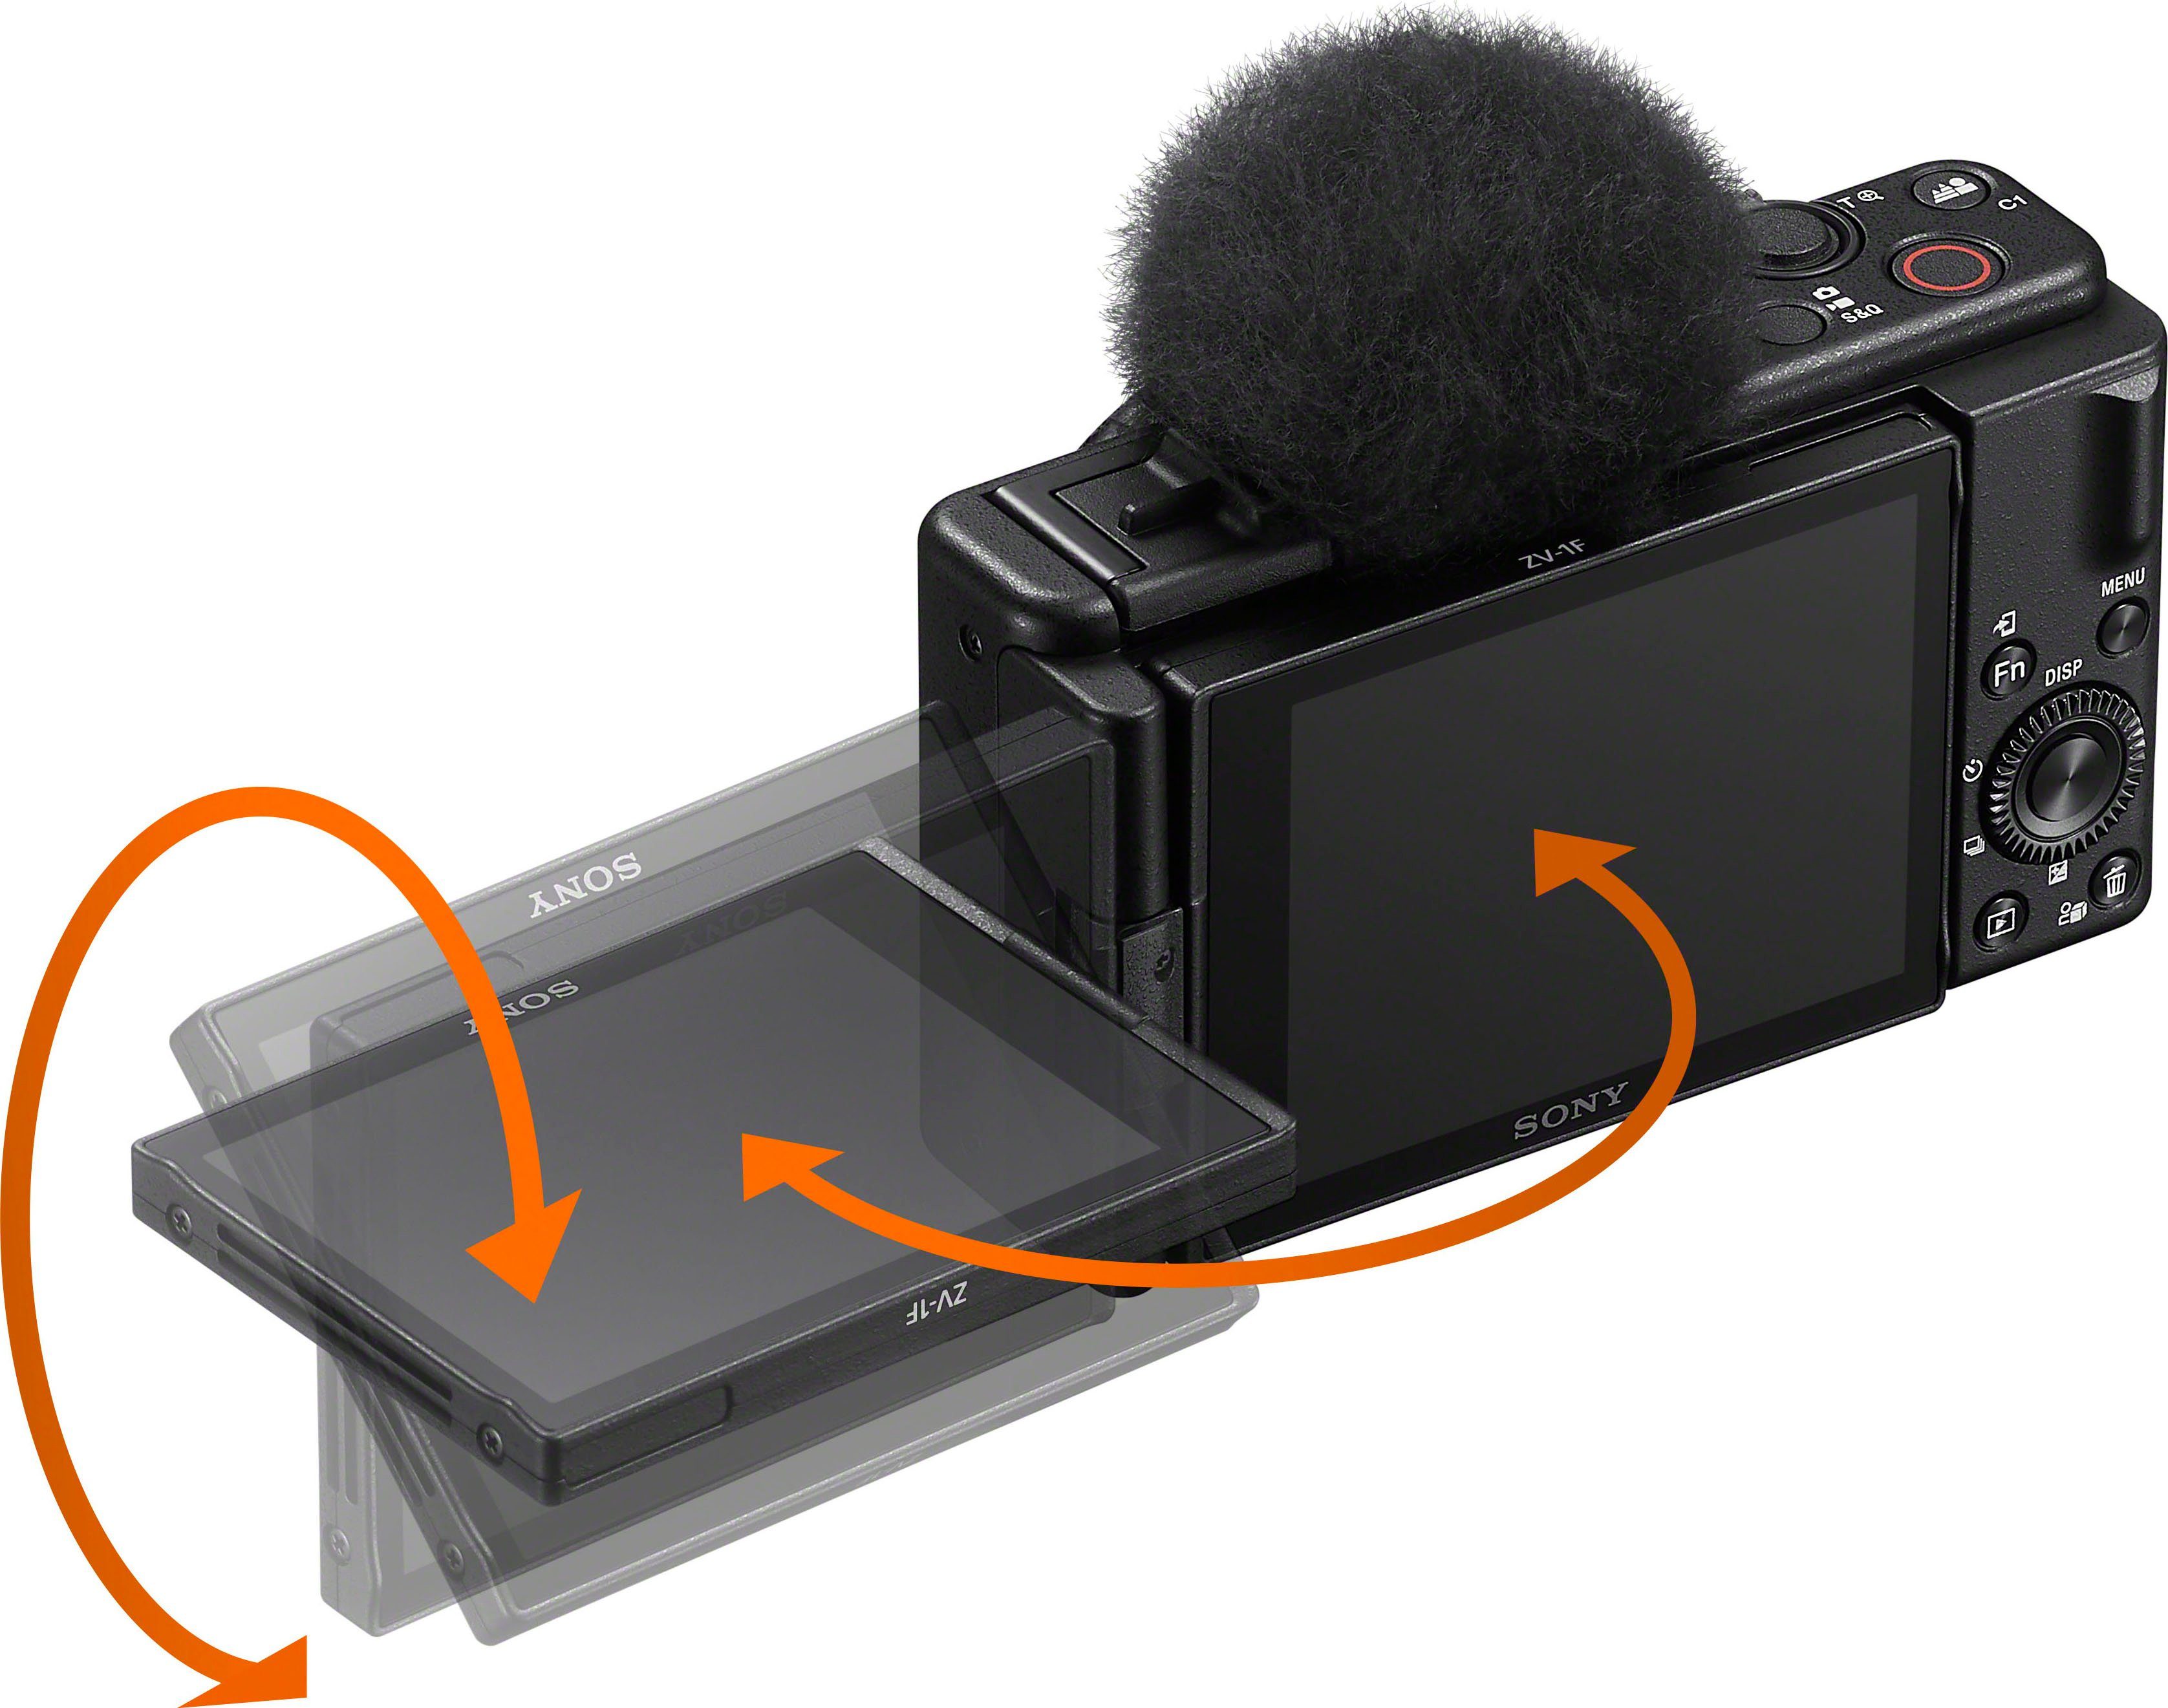 Sony ZV-1F Kompaktkamera (ZEISS Tessar Elemente in 6 Gruppen, WLAN) Objektiv, 6 MP, Bluetooth, T* 20,1